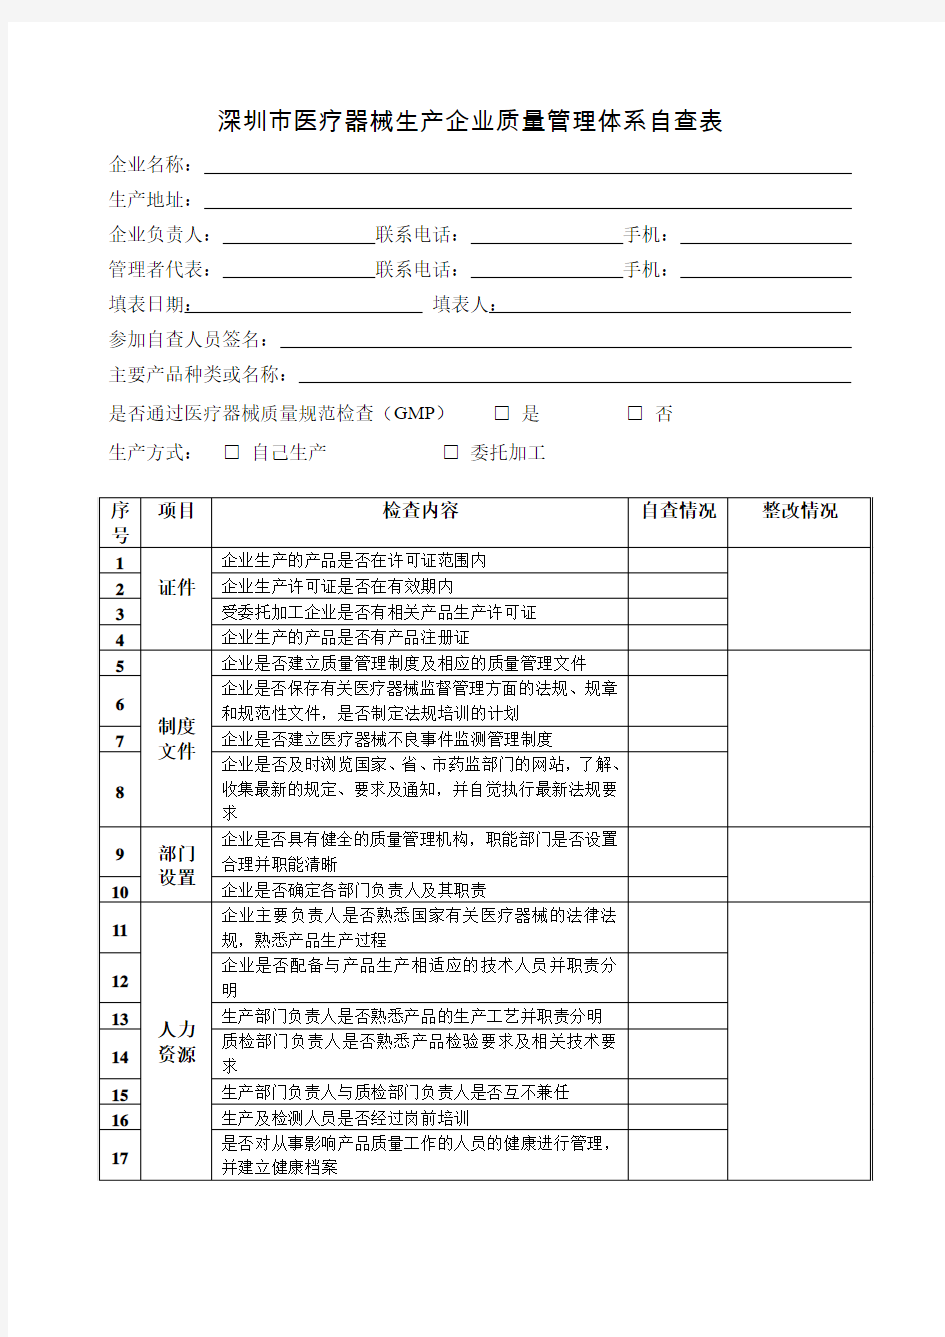 深圳市医疗器械生产企业质量管理体系自查表